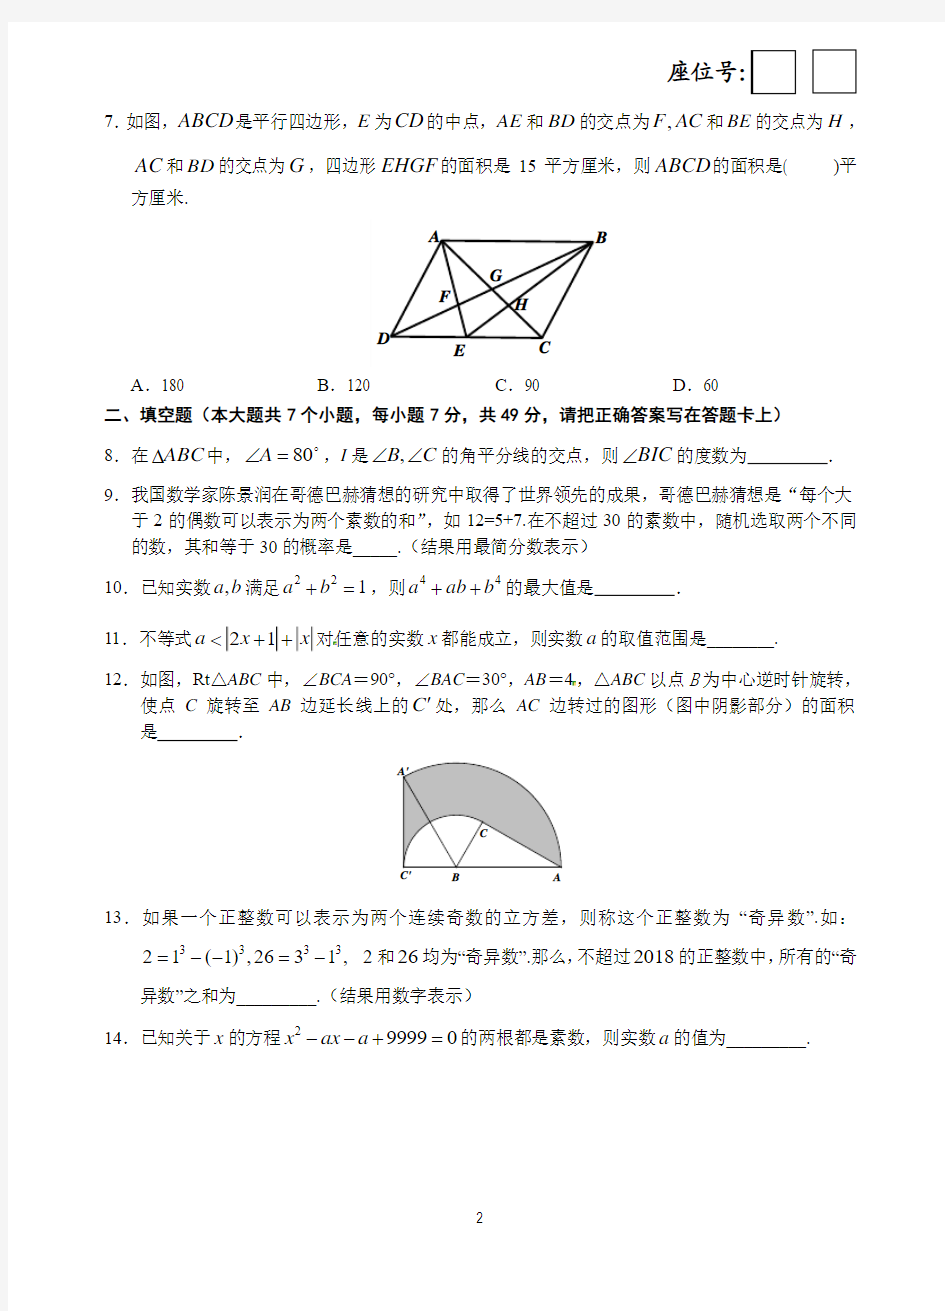 芜湖一中2018年高一自主招生考试数学试卷及答案